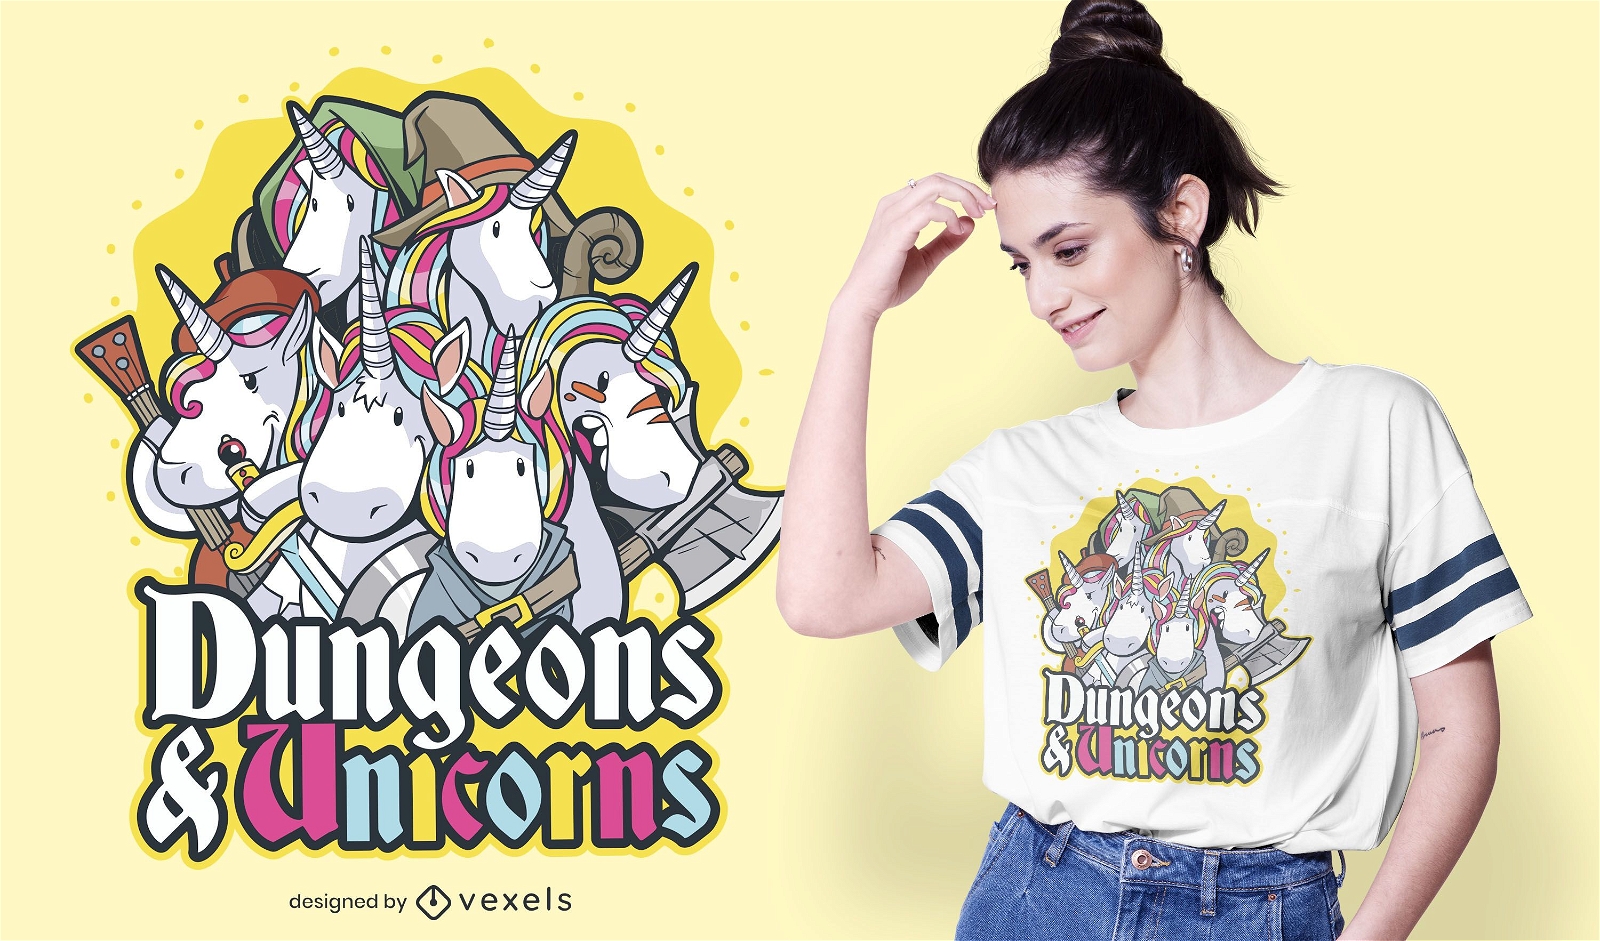 Dungeons & unicorns t-shirt design